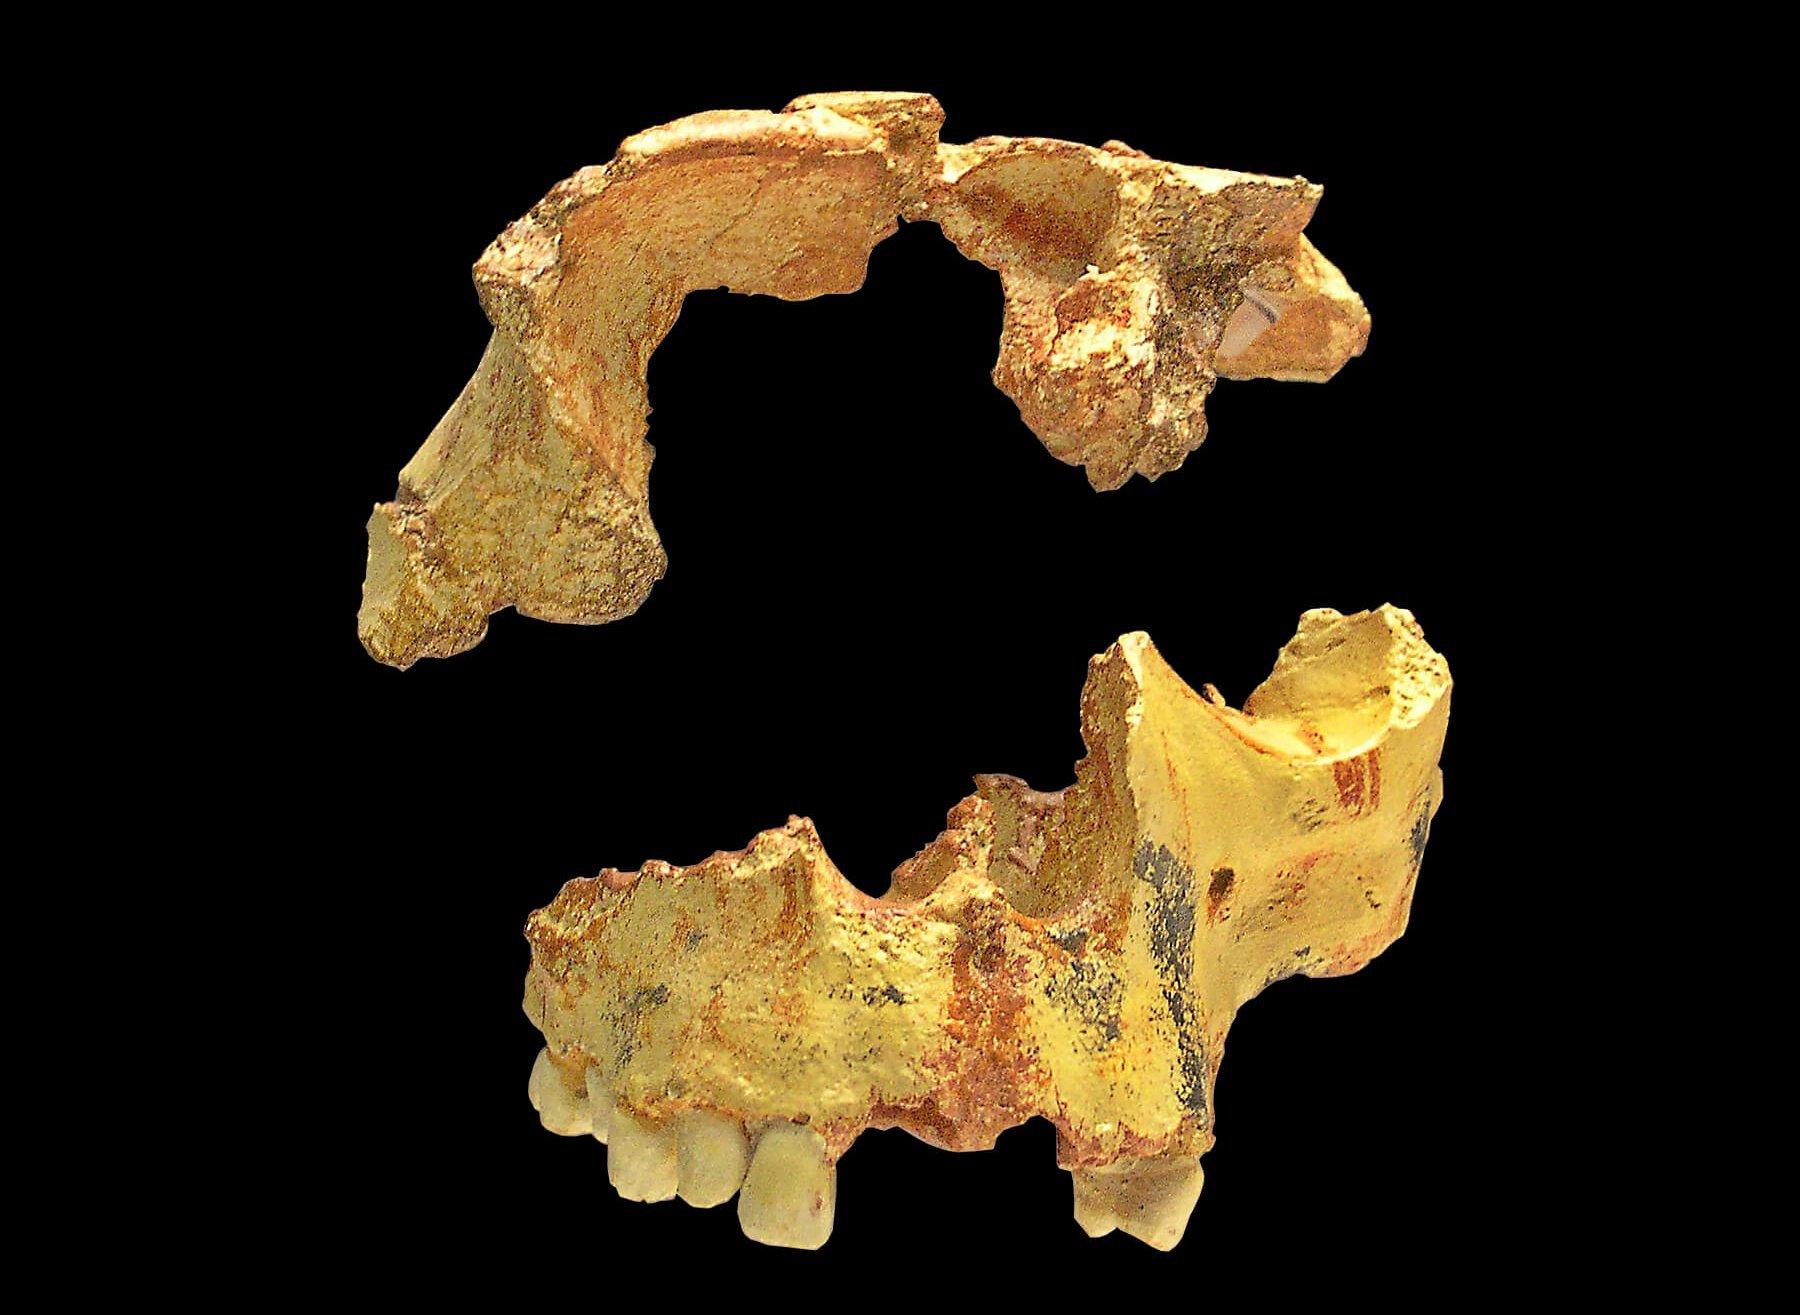 Gezeigt wird eine Nachbildung des Fossilien von Homo antecessor  – Teile des Schädeldachs und des Oberkiefers -, die in einer Höhle in Spanien gefunden wurden. Homo antecessor lebte vor rund 800.000 Jahren auf der Iberischen Halbinsel und gilt als einer der ersten Europäer. Er könnte der Vorgänger des Heidelbergmenschen gewesen sein.